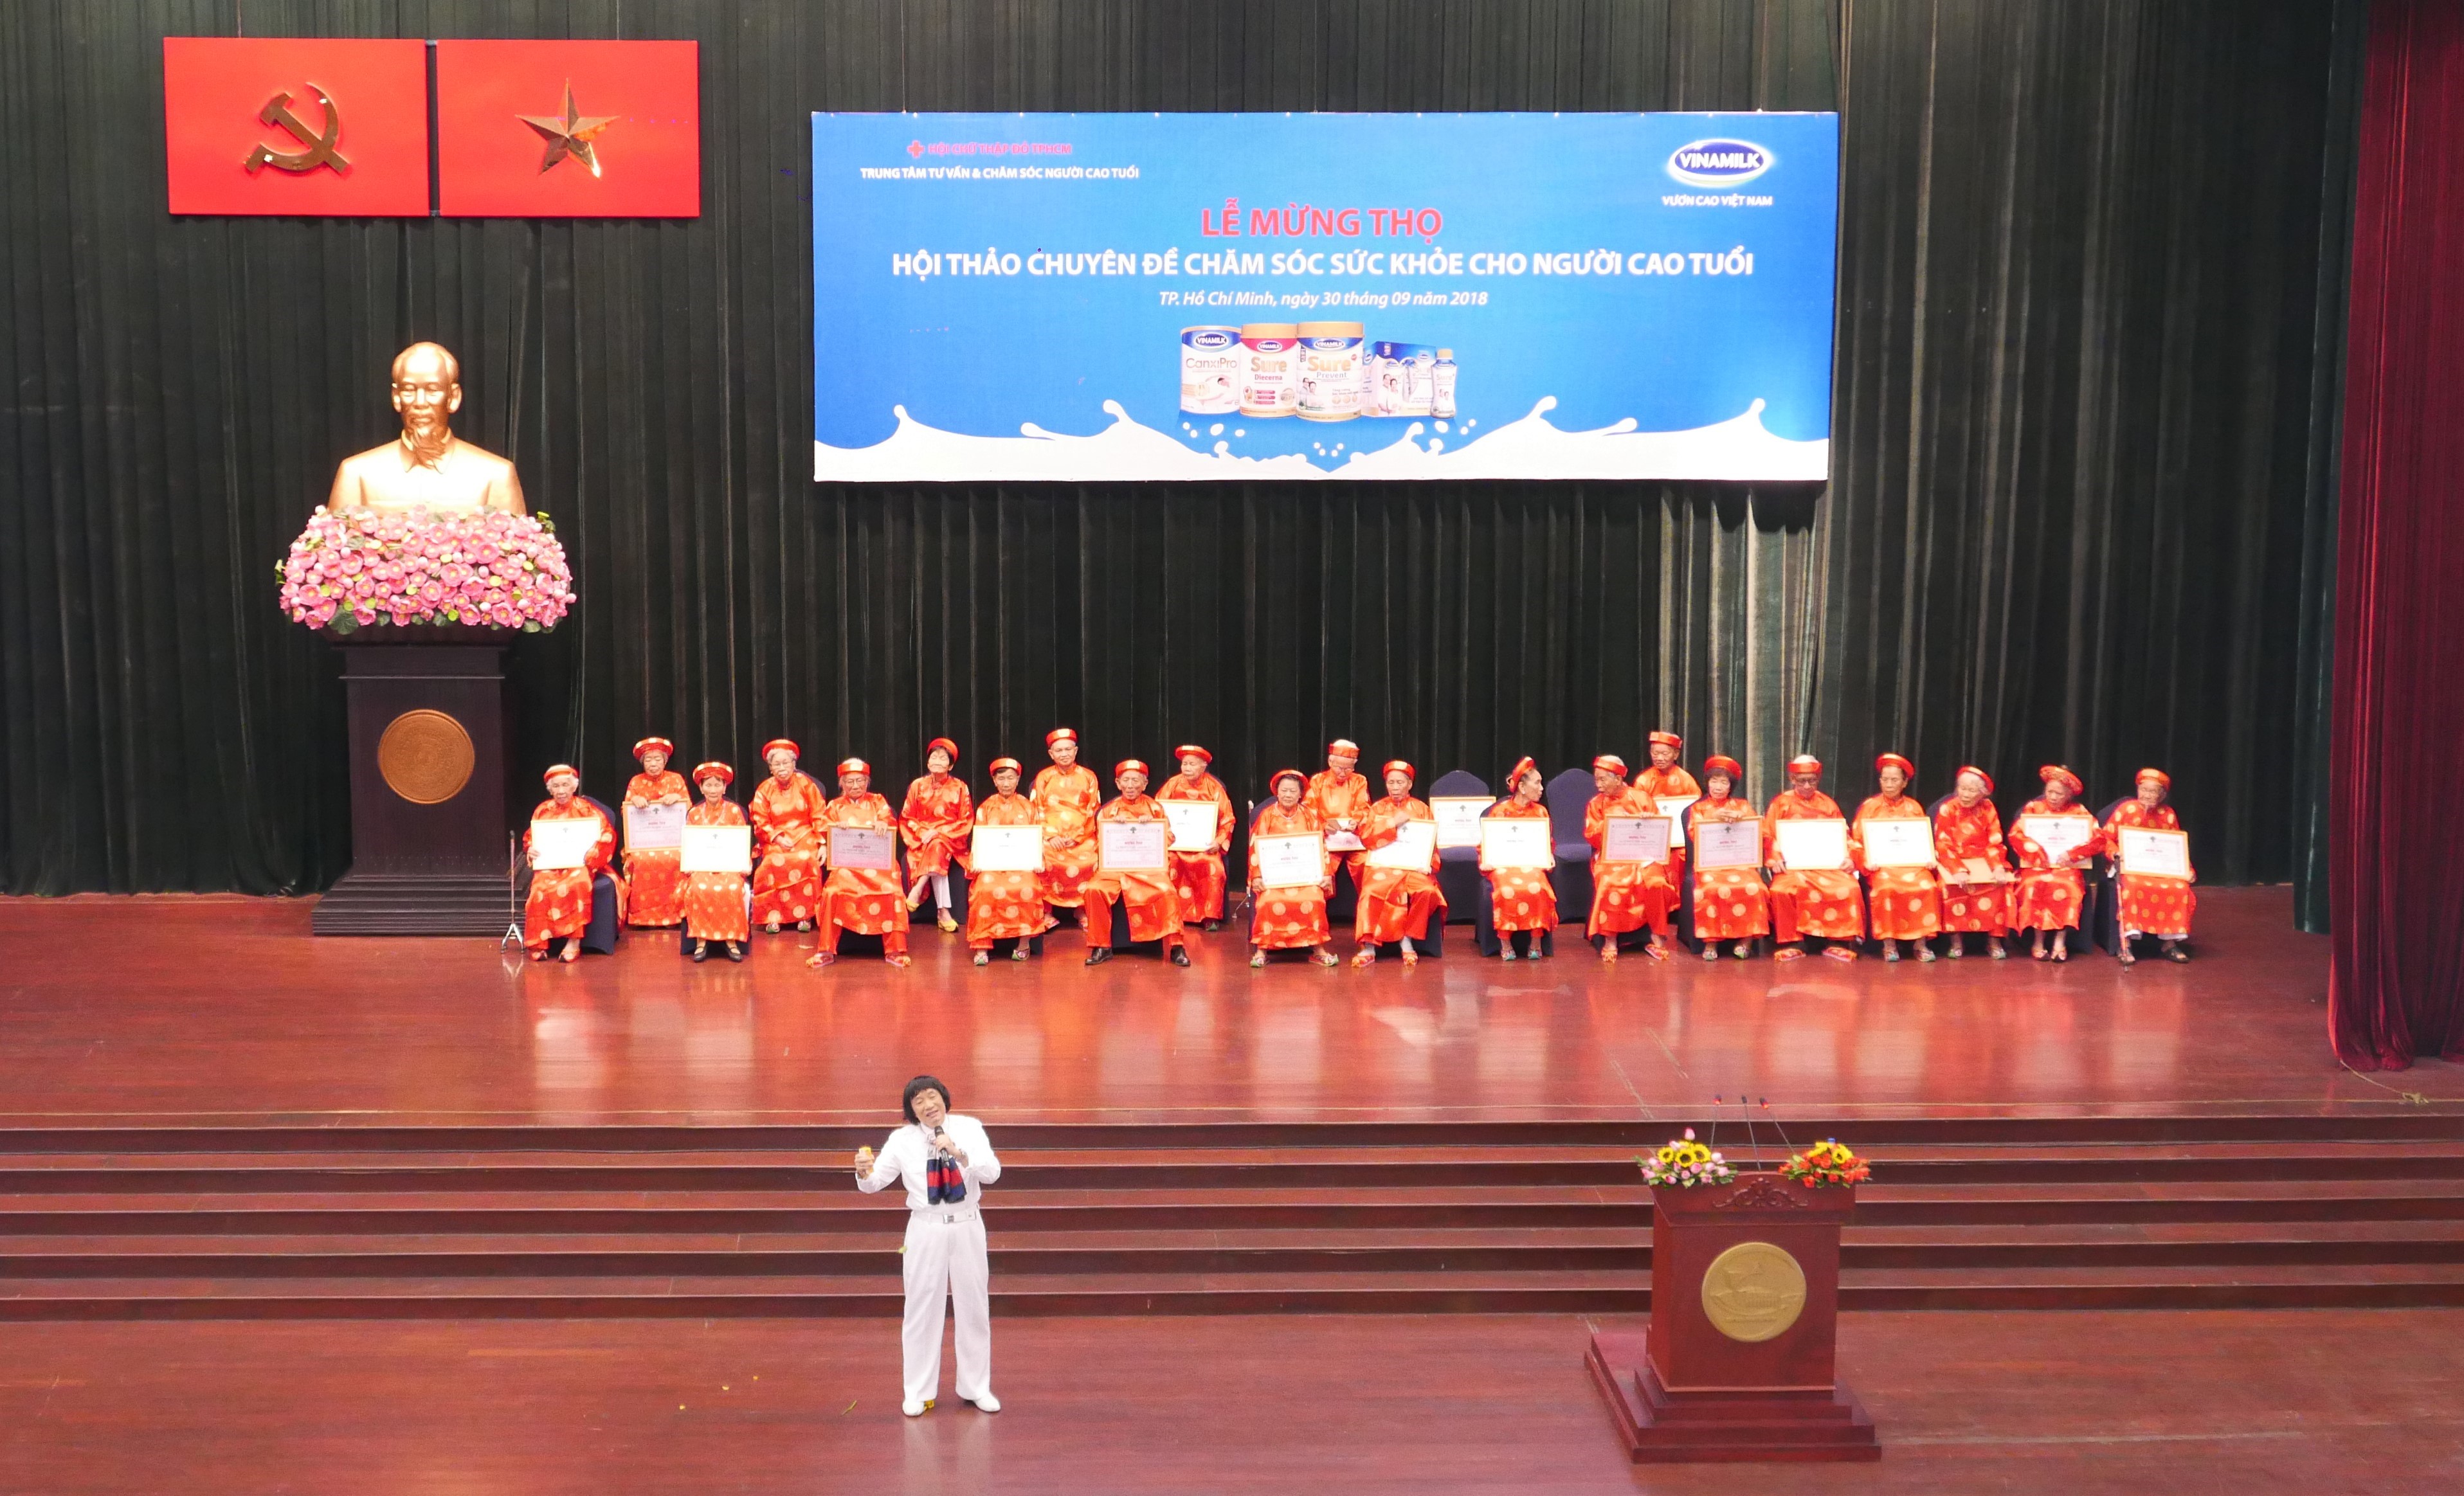 Nghệ sĩ ưu tú Minh Vương biểu diễn trên sân khấu tại lễ mừng thọ người cao tuổi Thành phố Hồ Chí Minh.